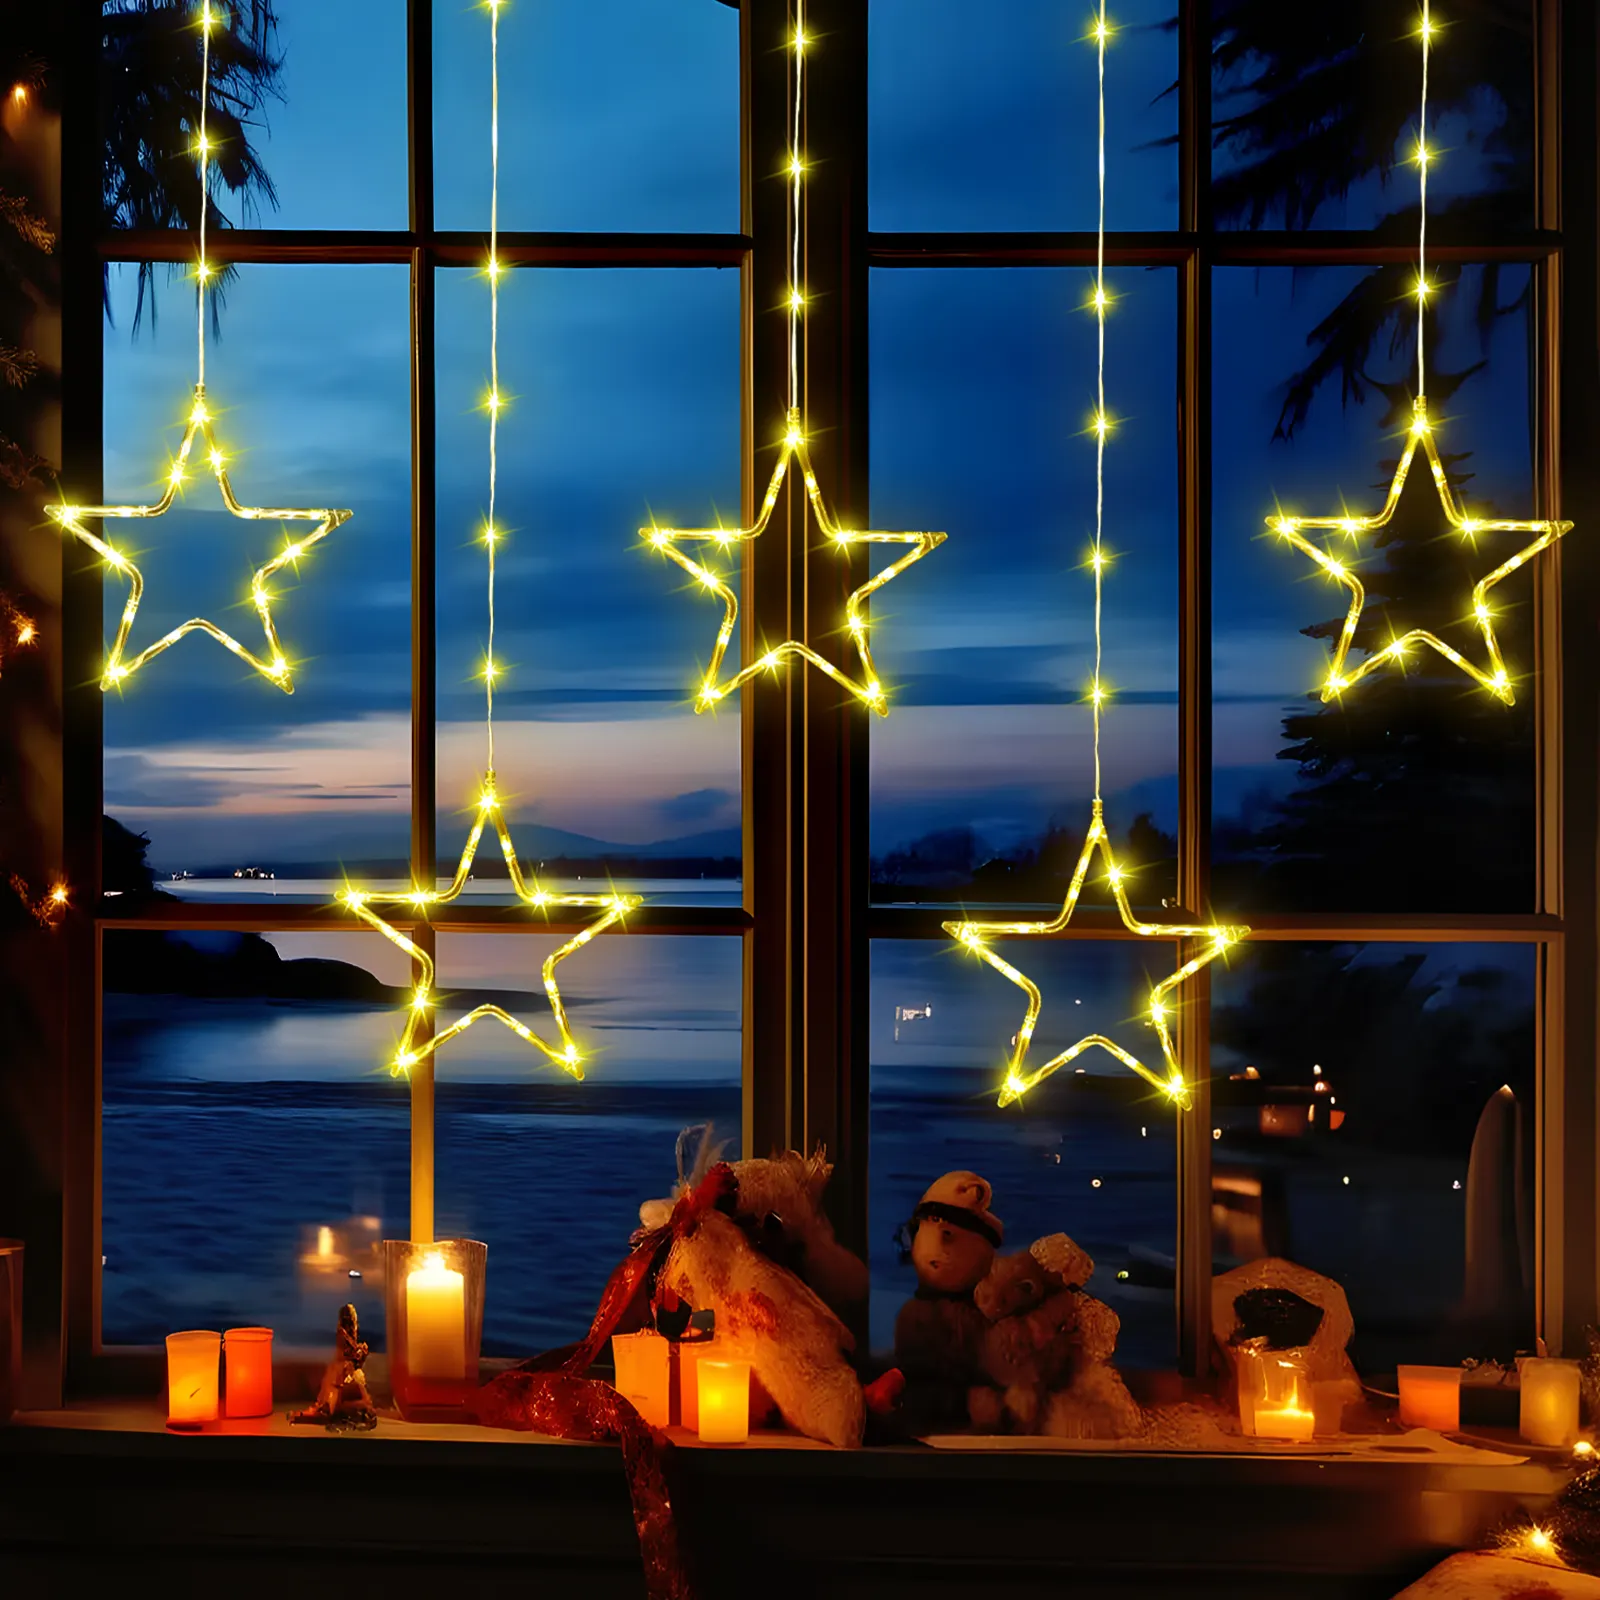 نورثلاند ضوء سلسلة في الهواء الطلق شفاف مشرق واضح شكل نجمة أضواء عيد الميلاد عيد الميلاد خرافية وميض ضوء سلسلة الستار